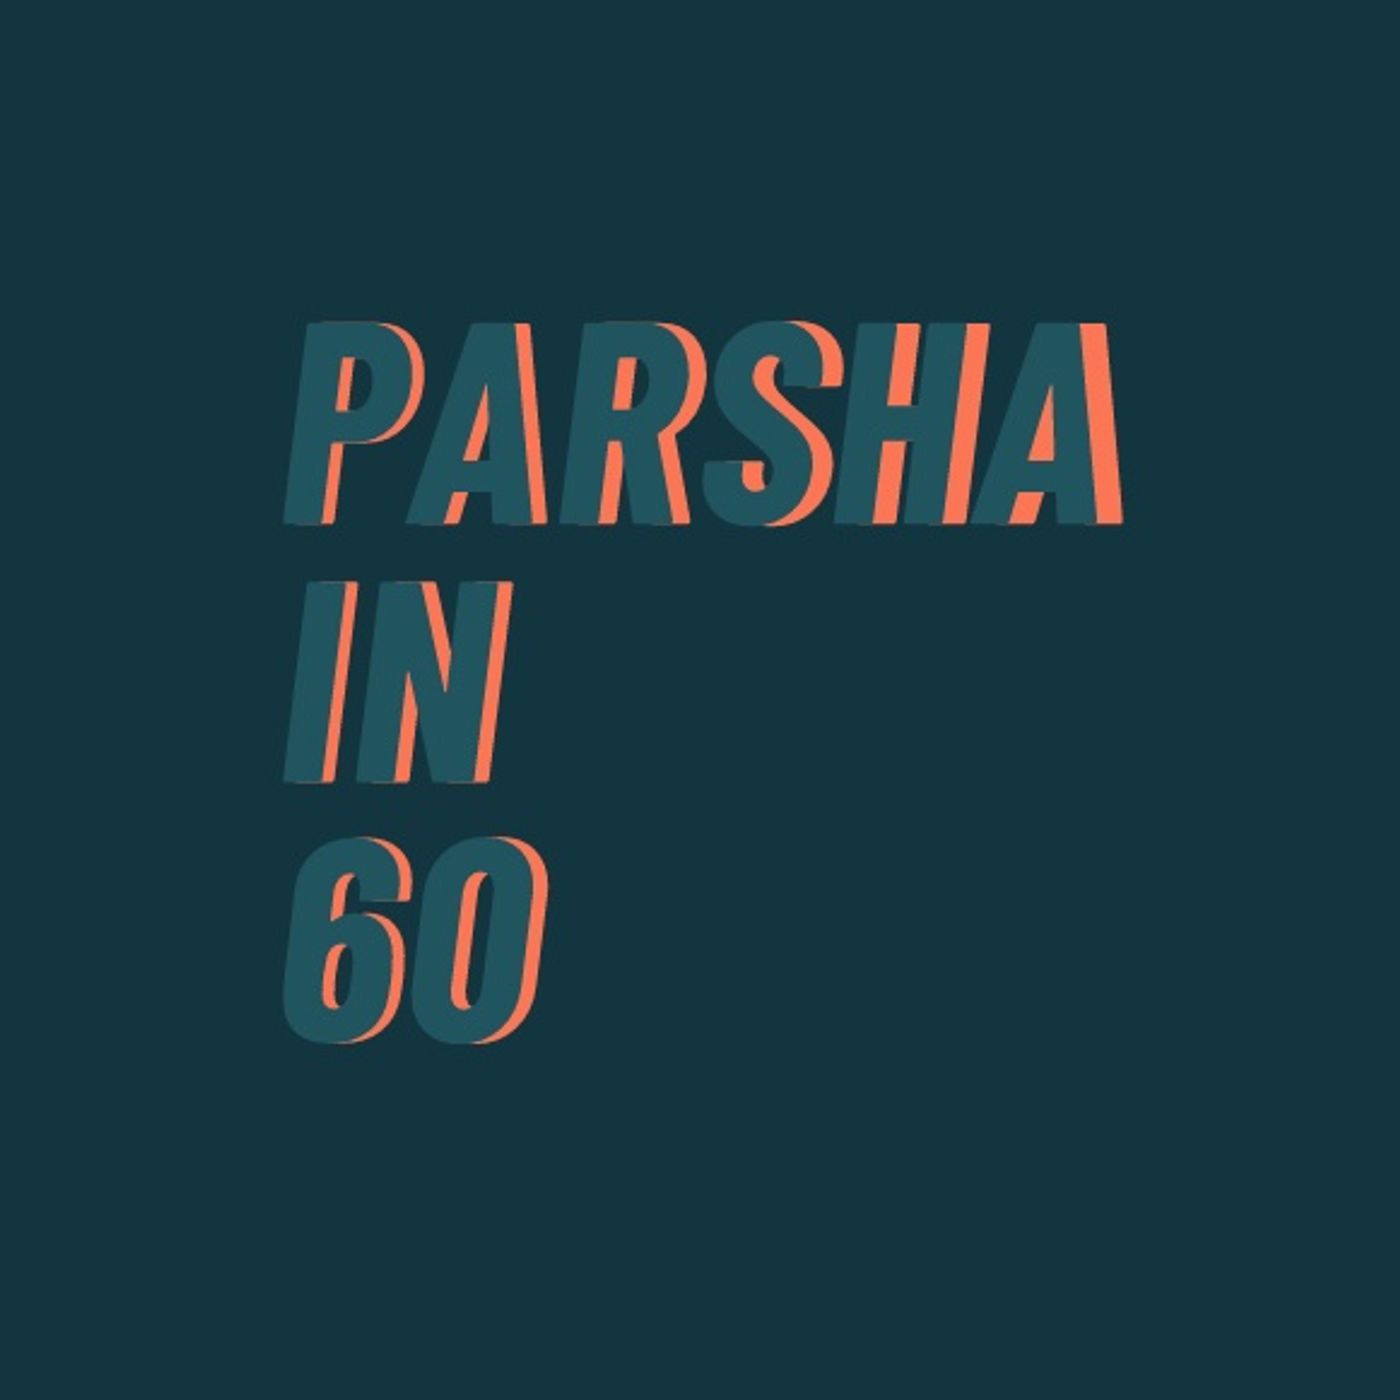 Parshah In 60